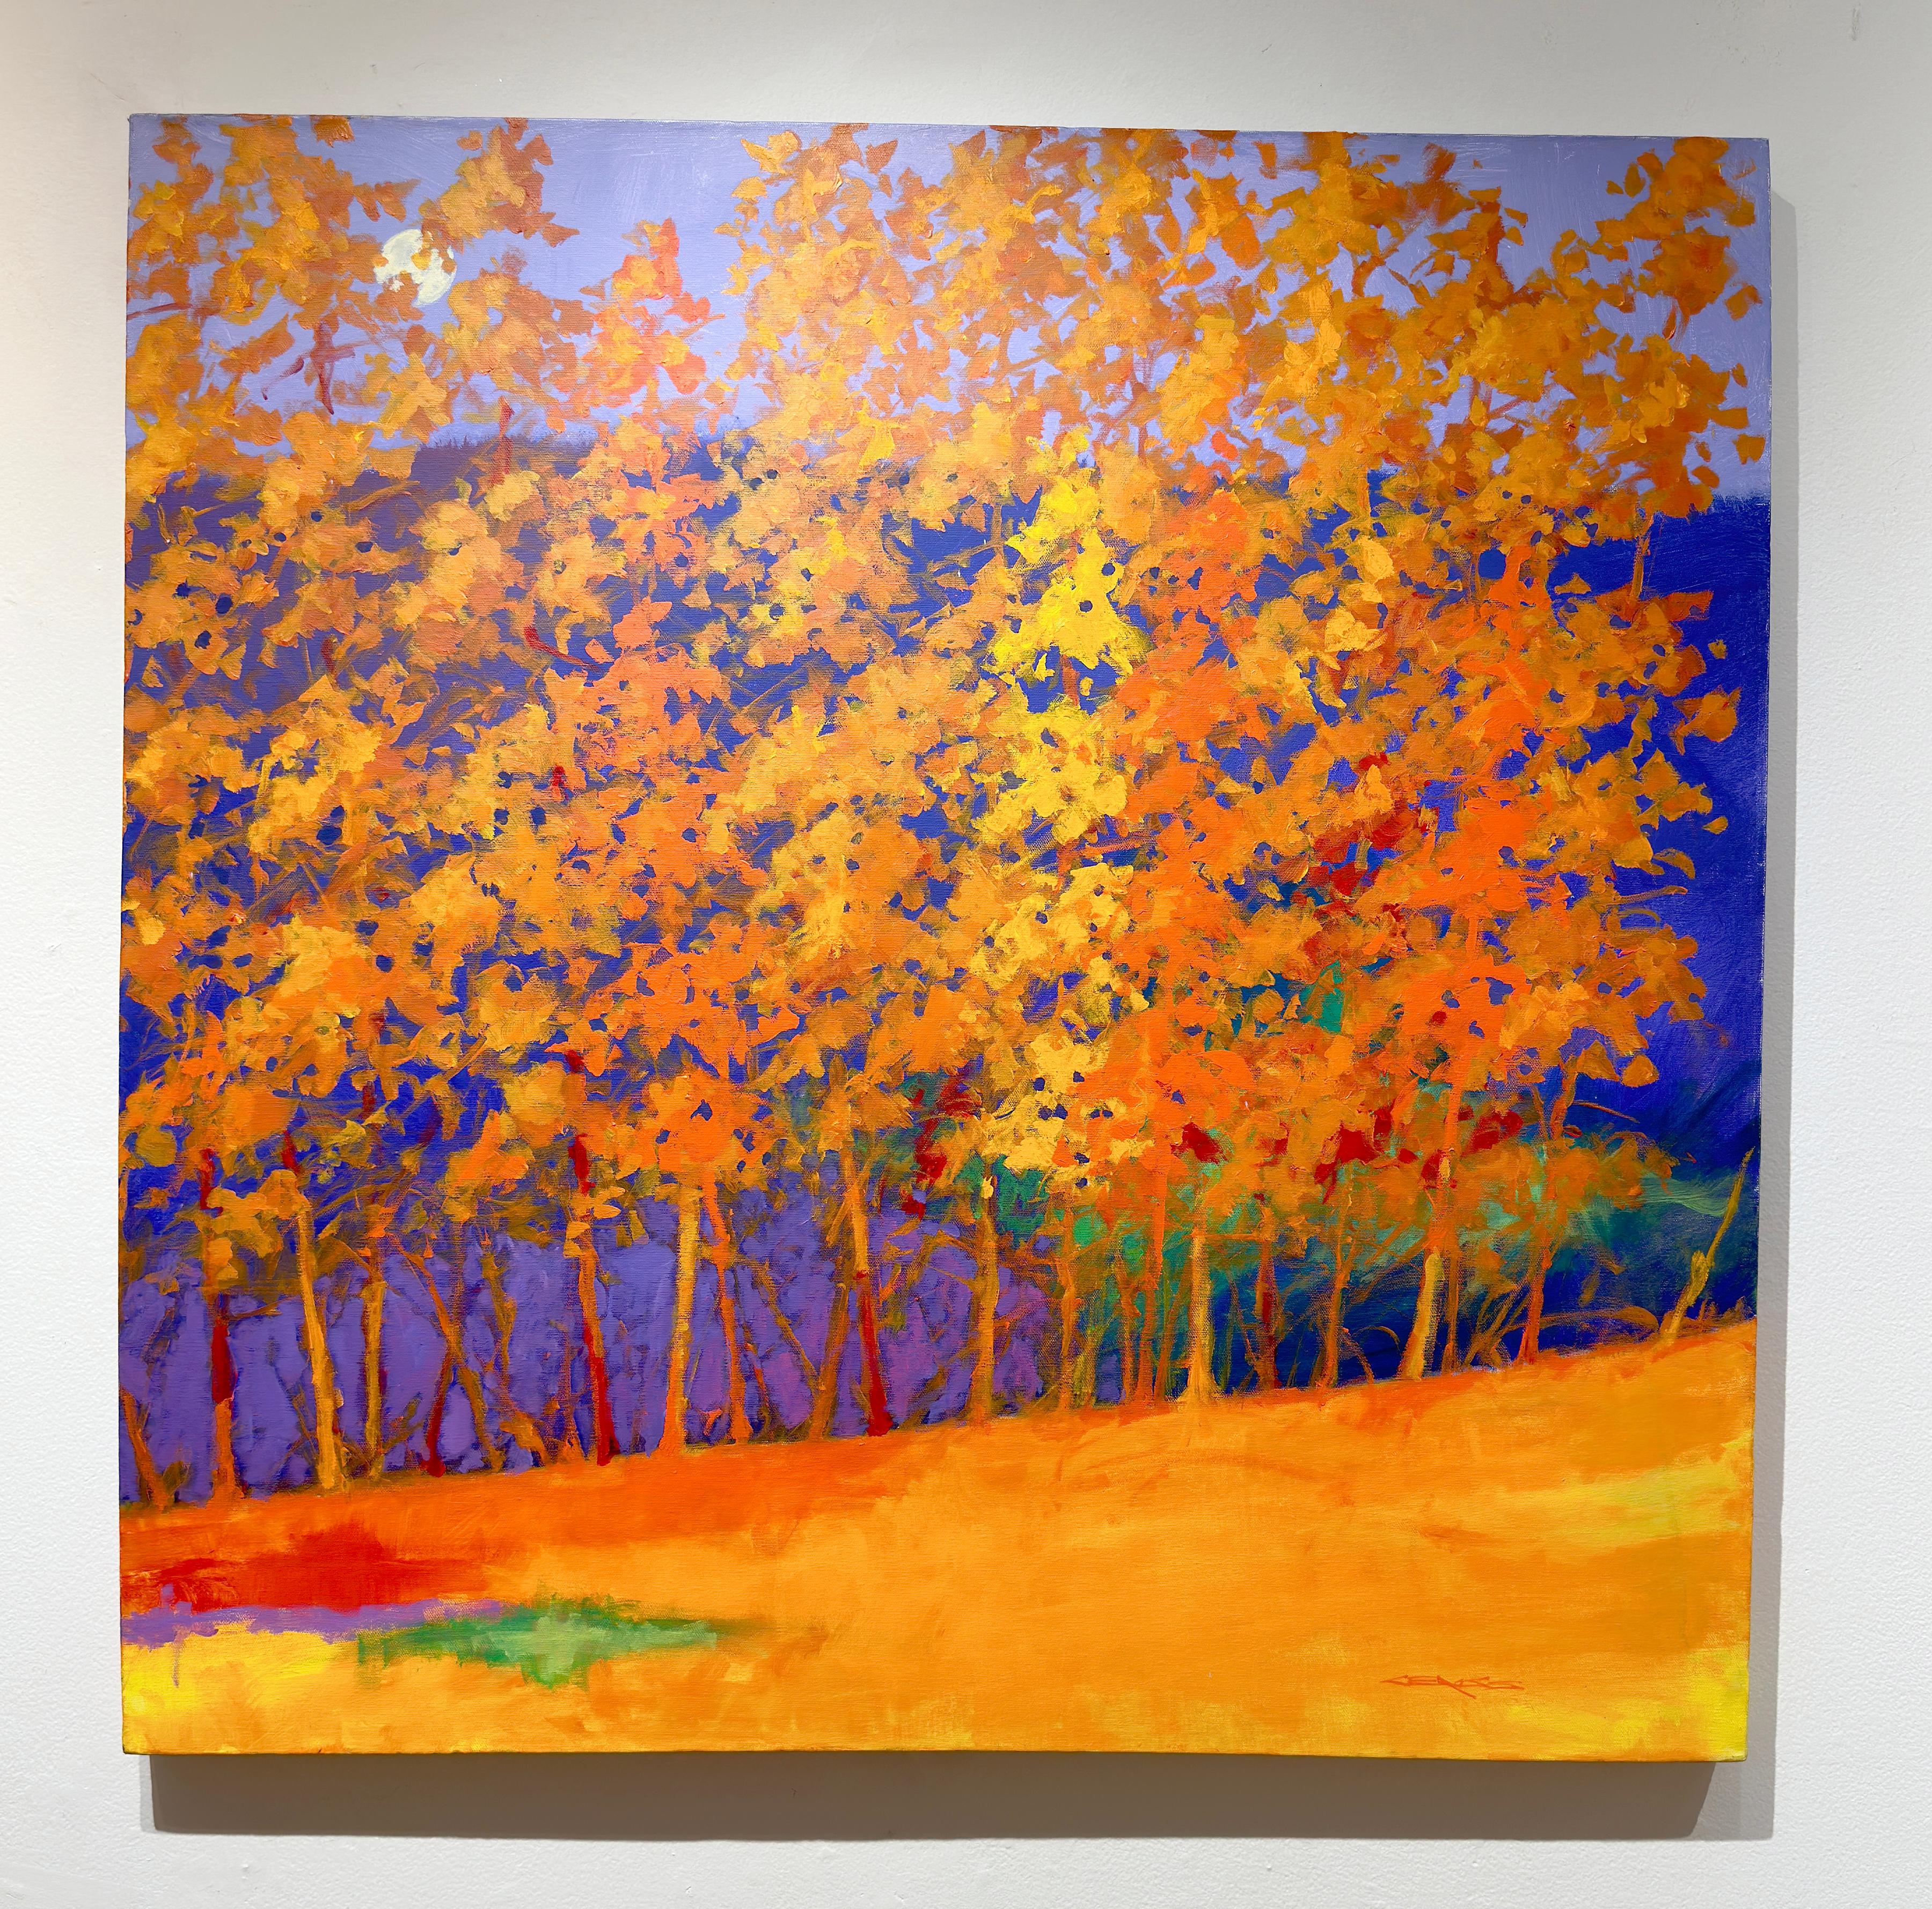 C.E. Ross, « Vibrant Day », paysage forestier abstrait coloré orange-violet - Painting de Charles Emery Ross